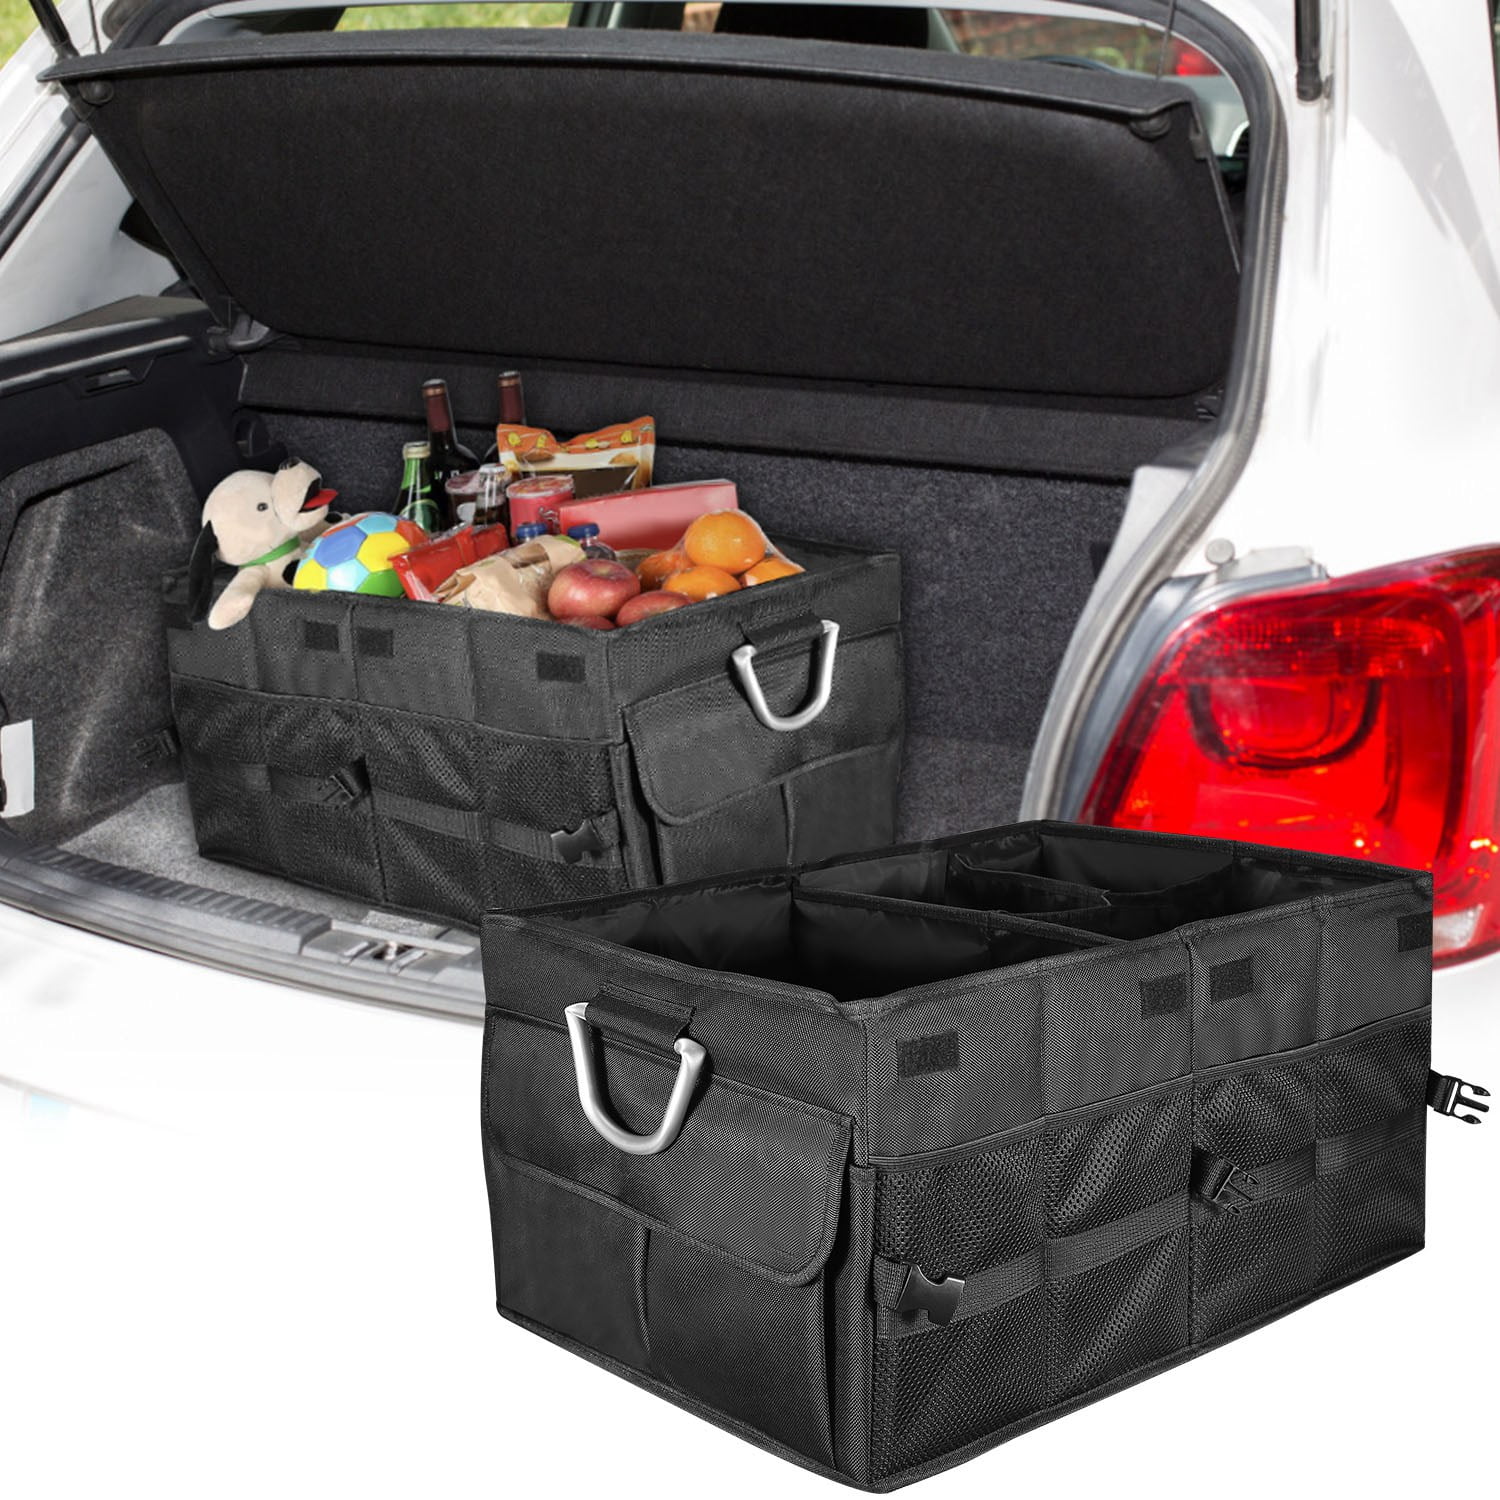 Car Storage Bins,car Storage Bag,car Storage Bins,car Seat Storage,car Seat  Storages,car Seat Storage Bin,storage Bins,storage,storages 